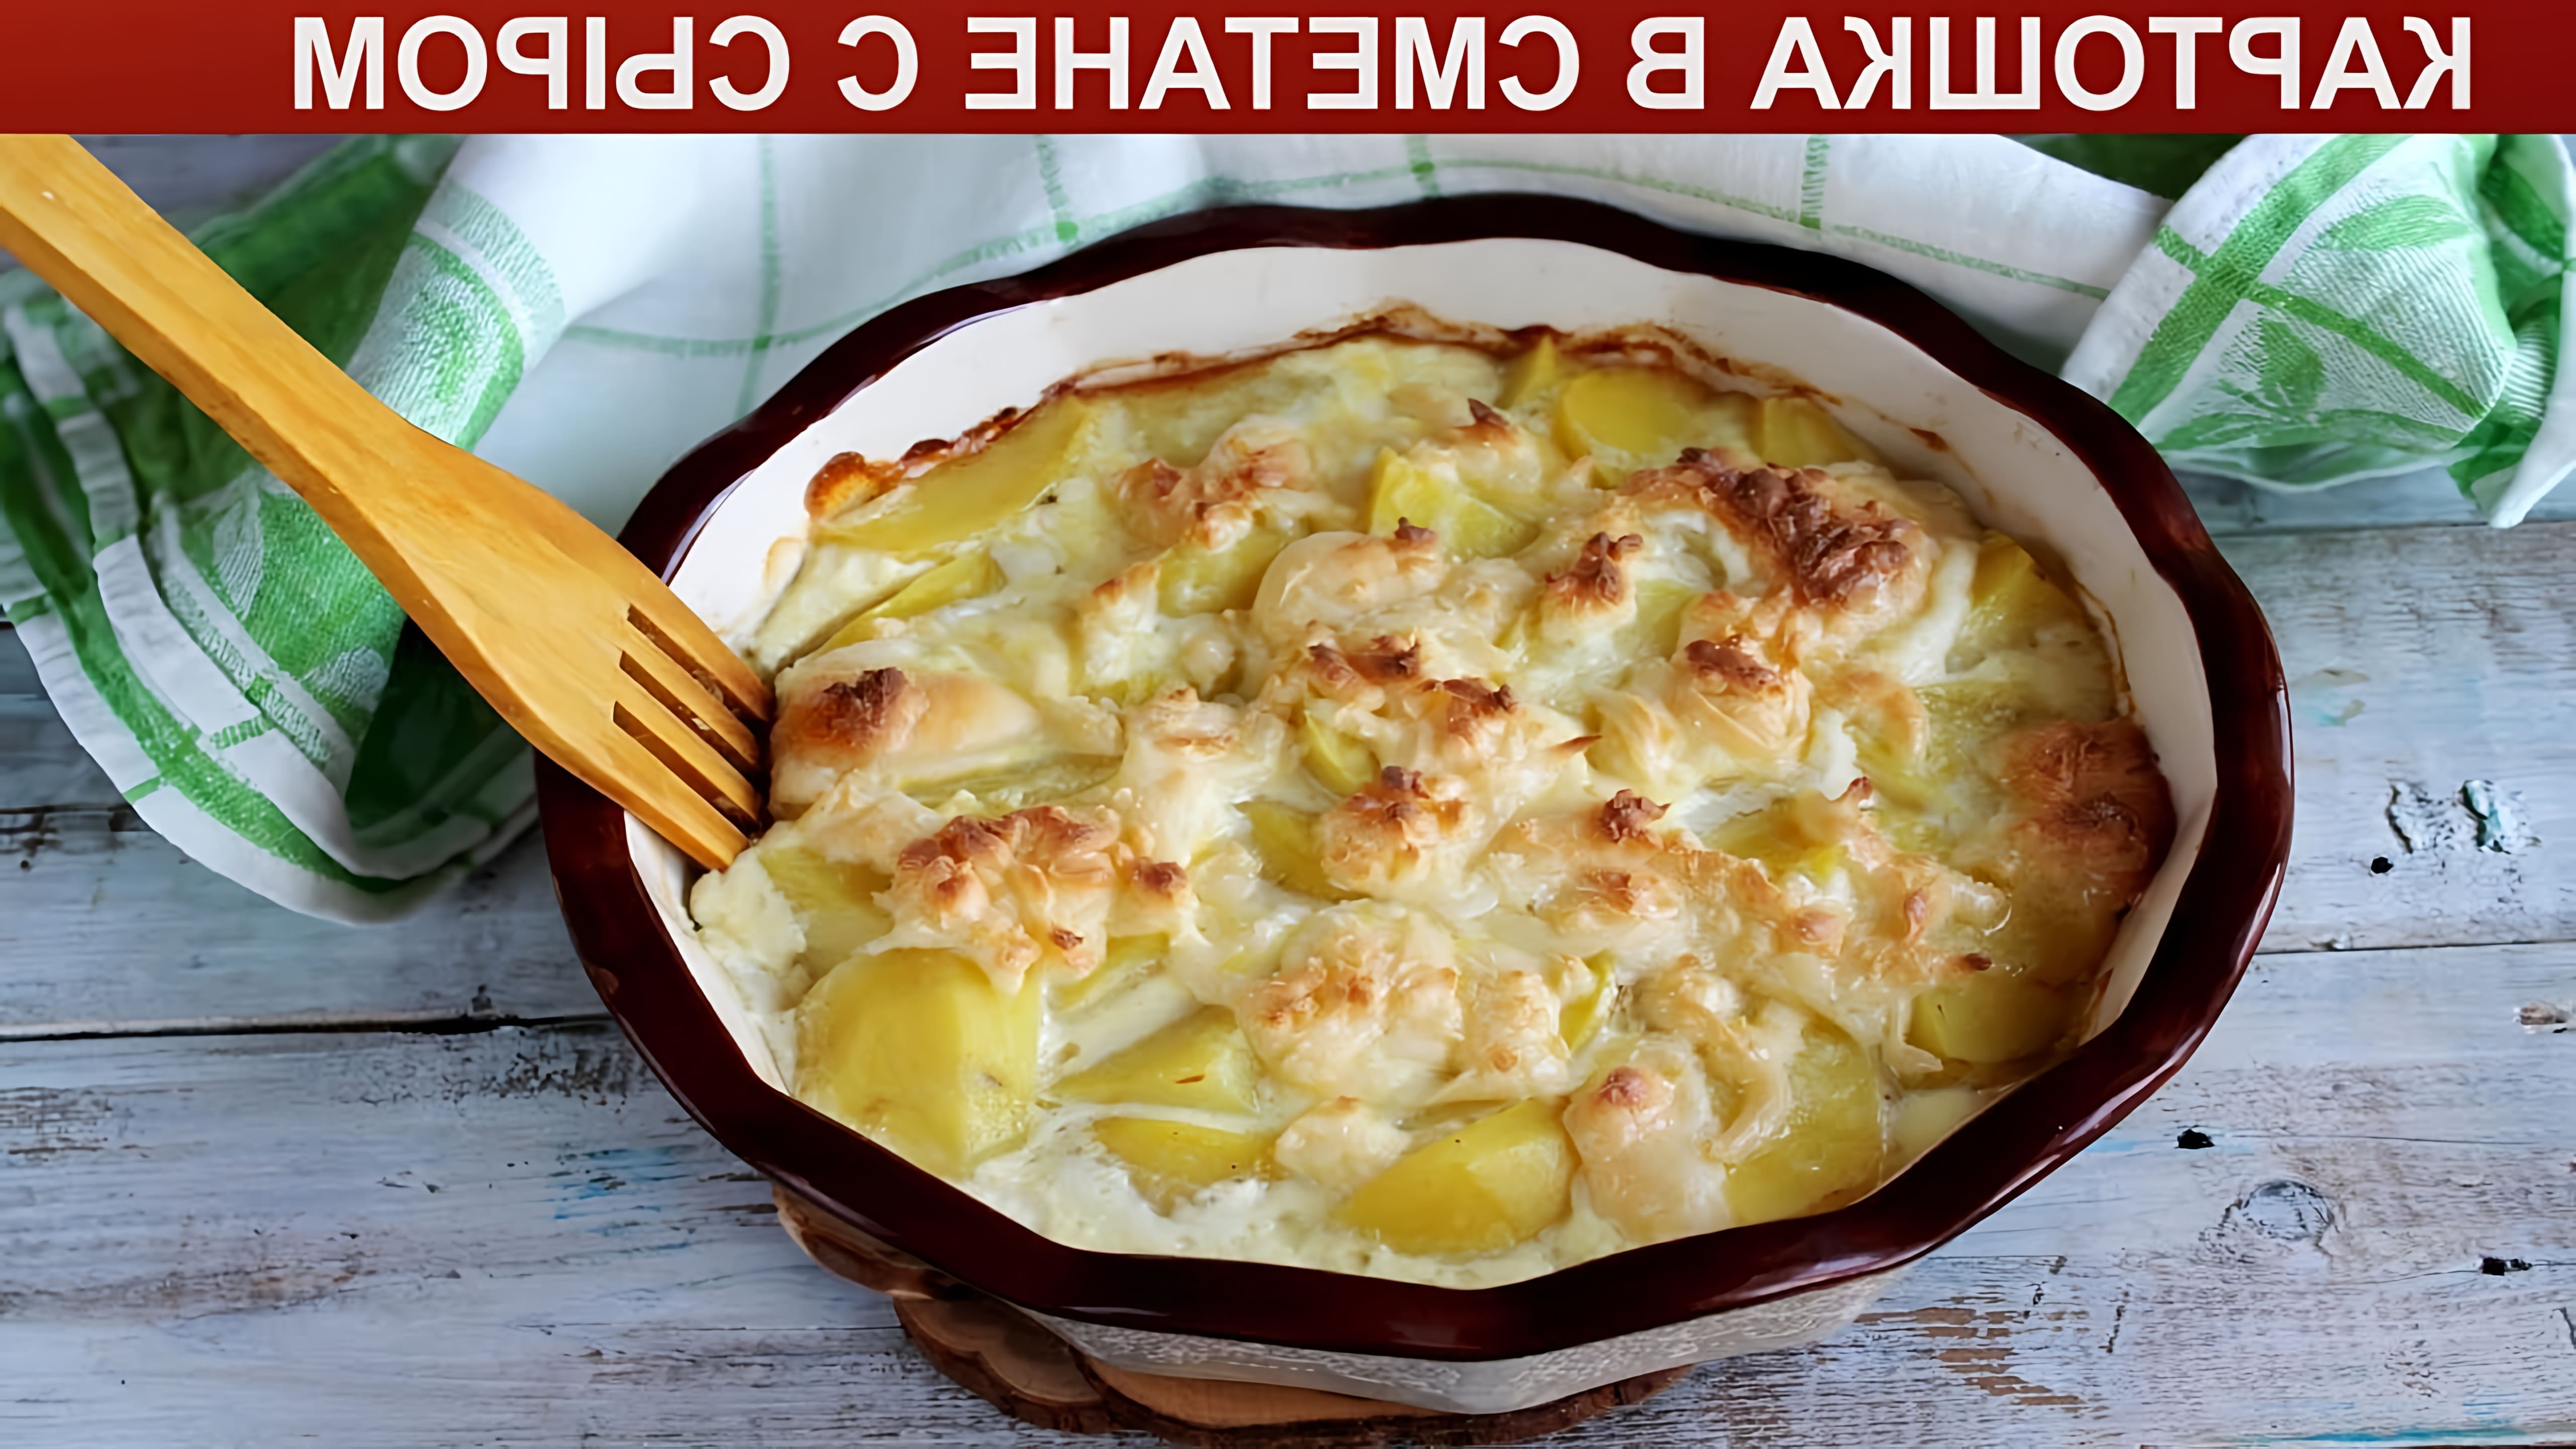 Оригинальное и простое блюдо из картофеля в духовке. Картошка, запеченная в сметане с сыром по этому рецепту... 